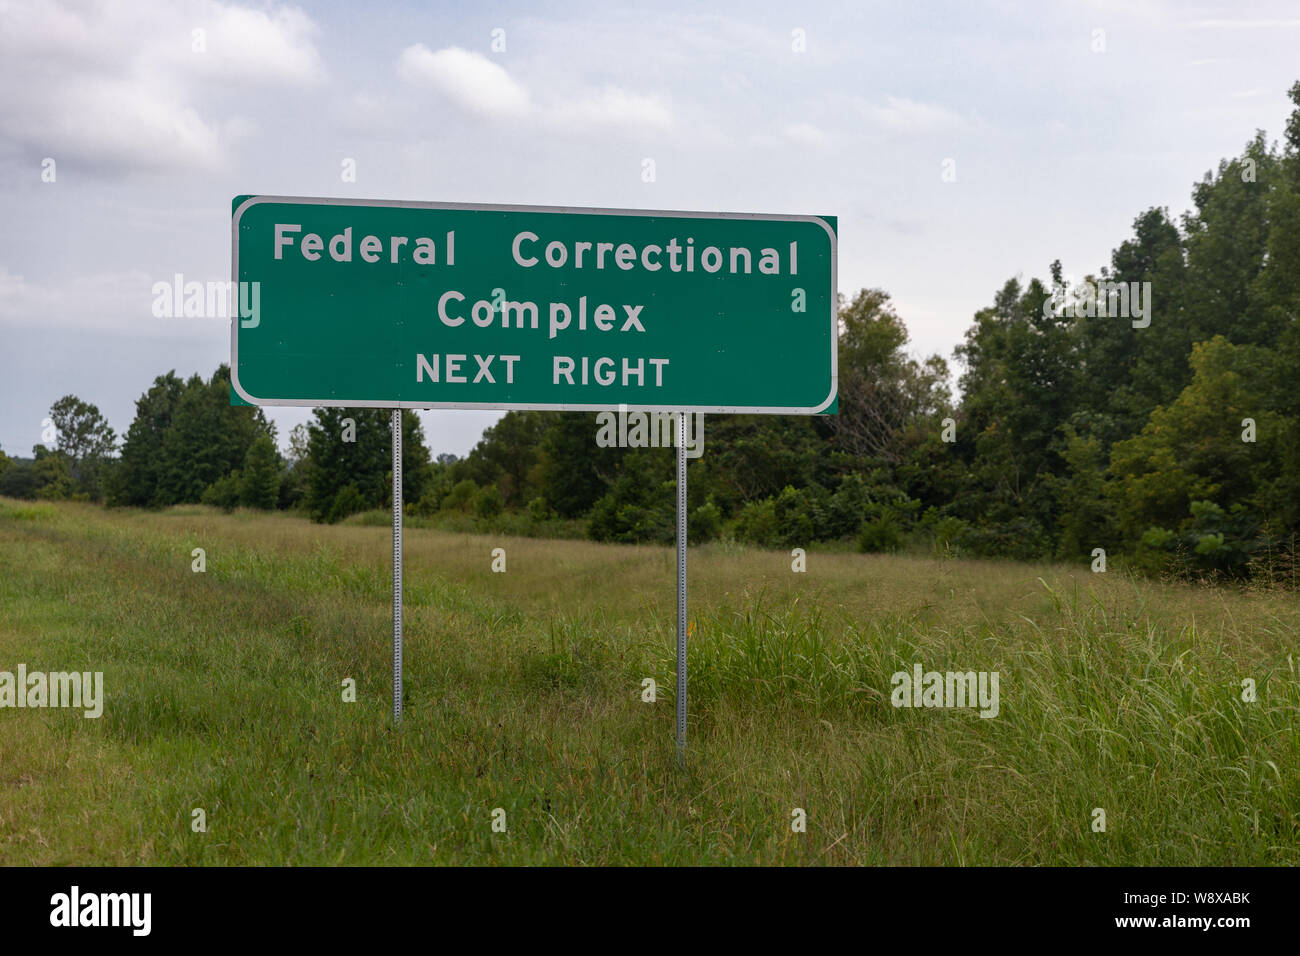 Federal Correctional Facility Zeichen auf der Seite der Landstraße Stockfoto